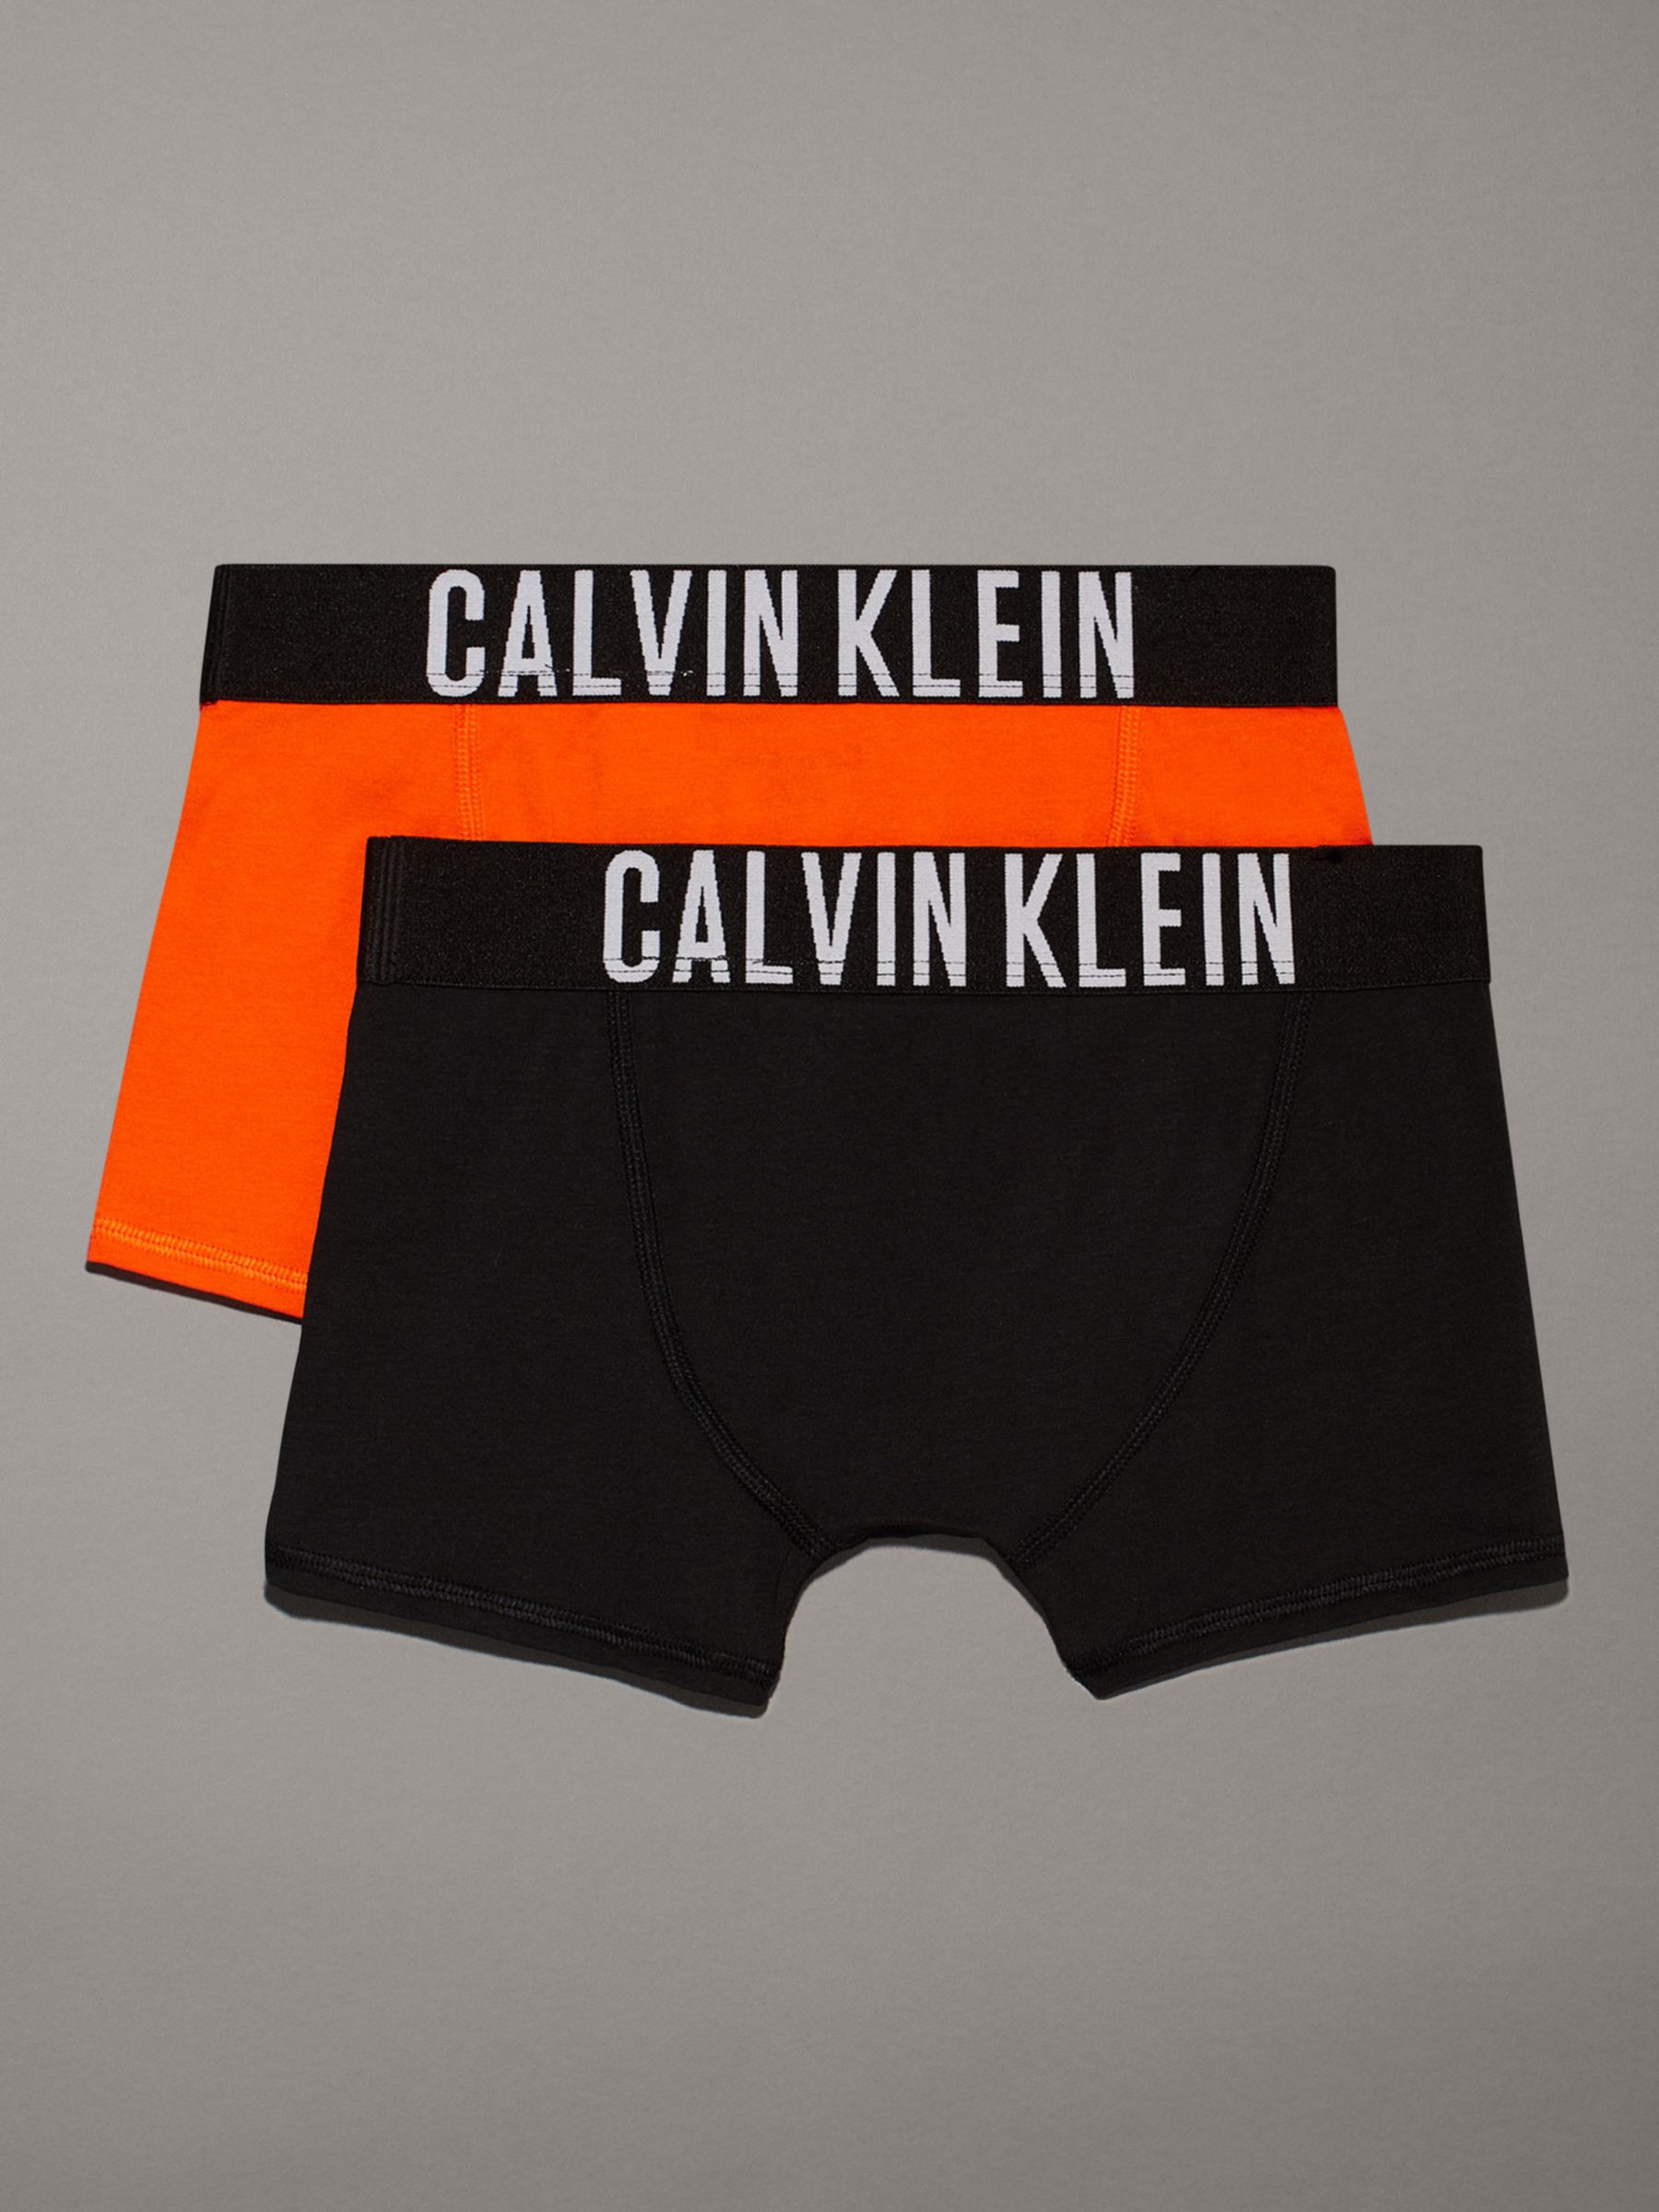 Calvin Klein Kids' Logo Solid Trunks, Pack of 2, Danger Orange/Black, 10-12 years